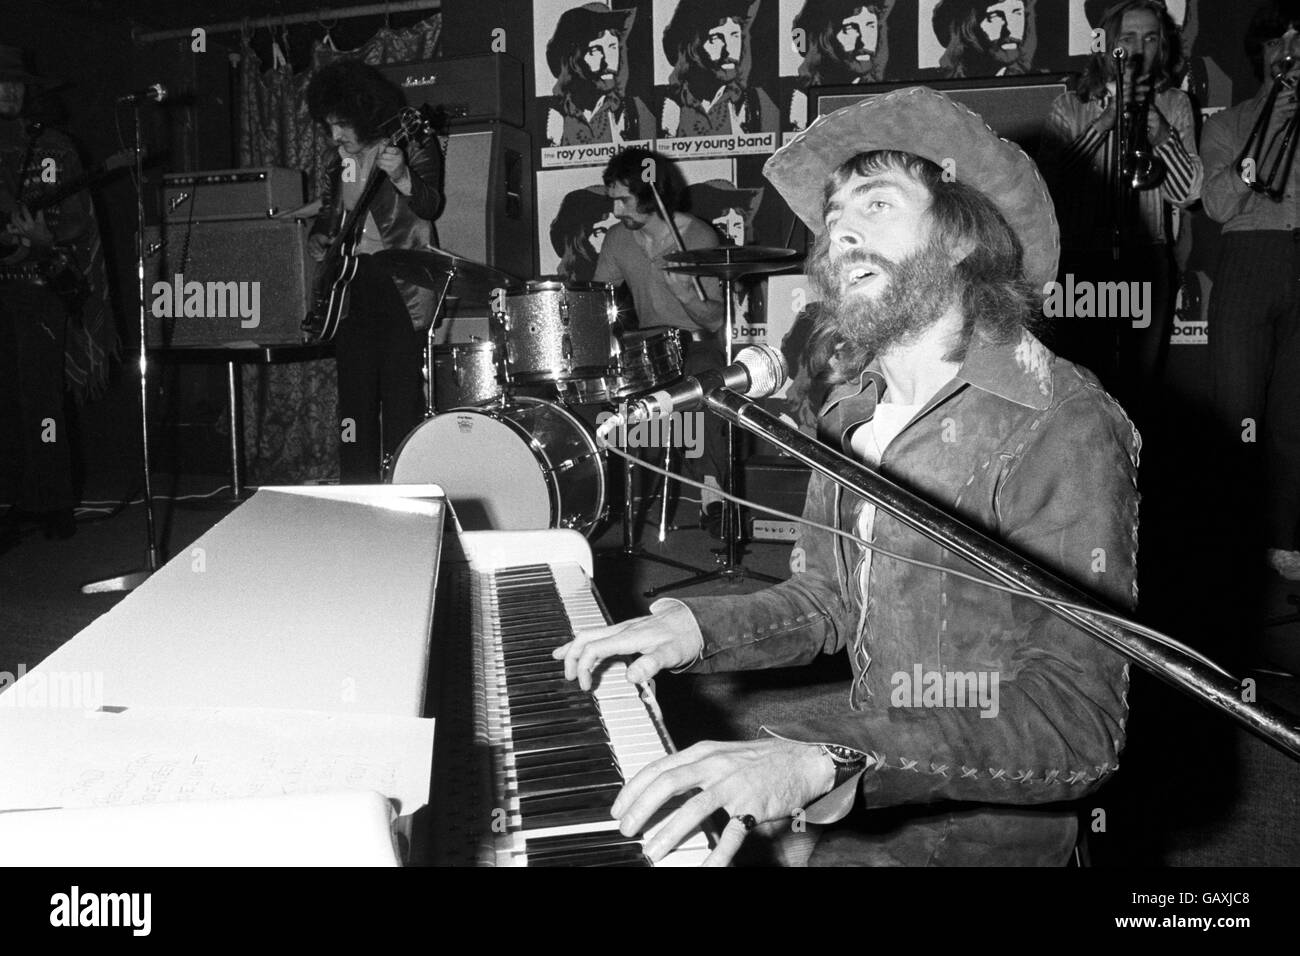 British Pop Music - The 1970s - Roy Young Band - London - 1970. Roy Young und seine Band im Speakeasy in der Margaret Street, London. Stockfoto